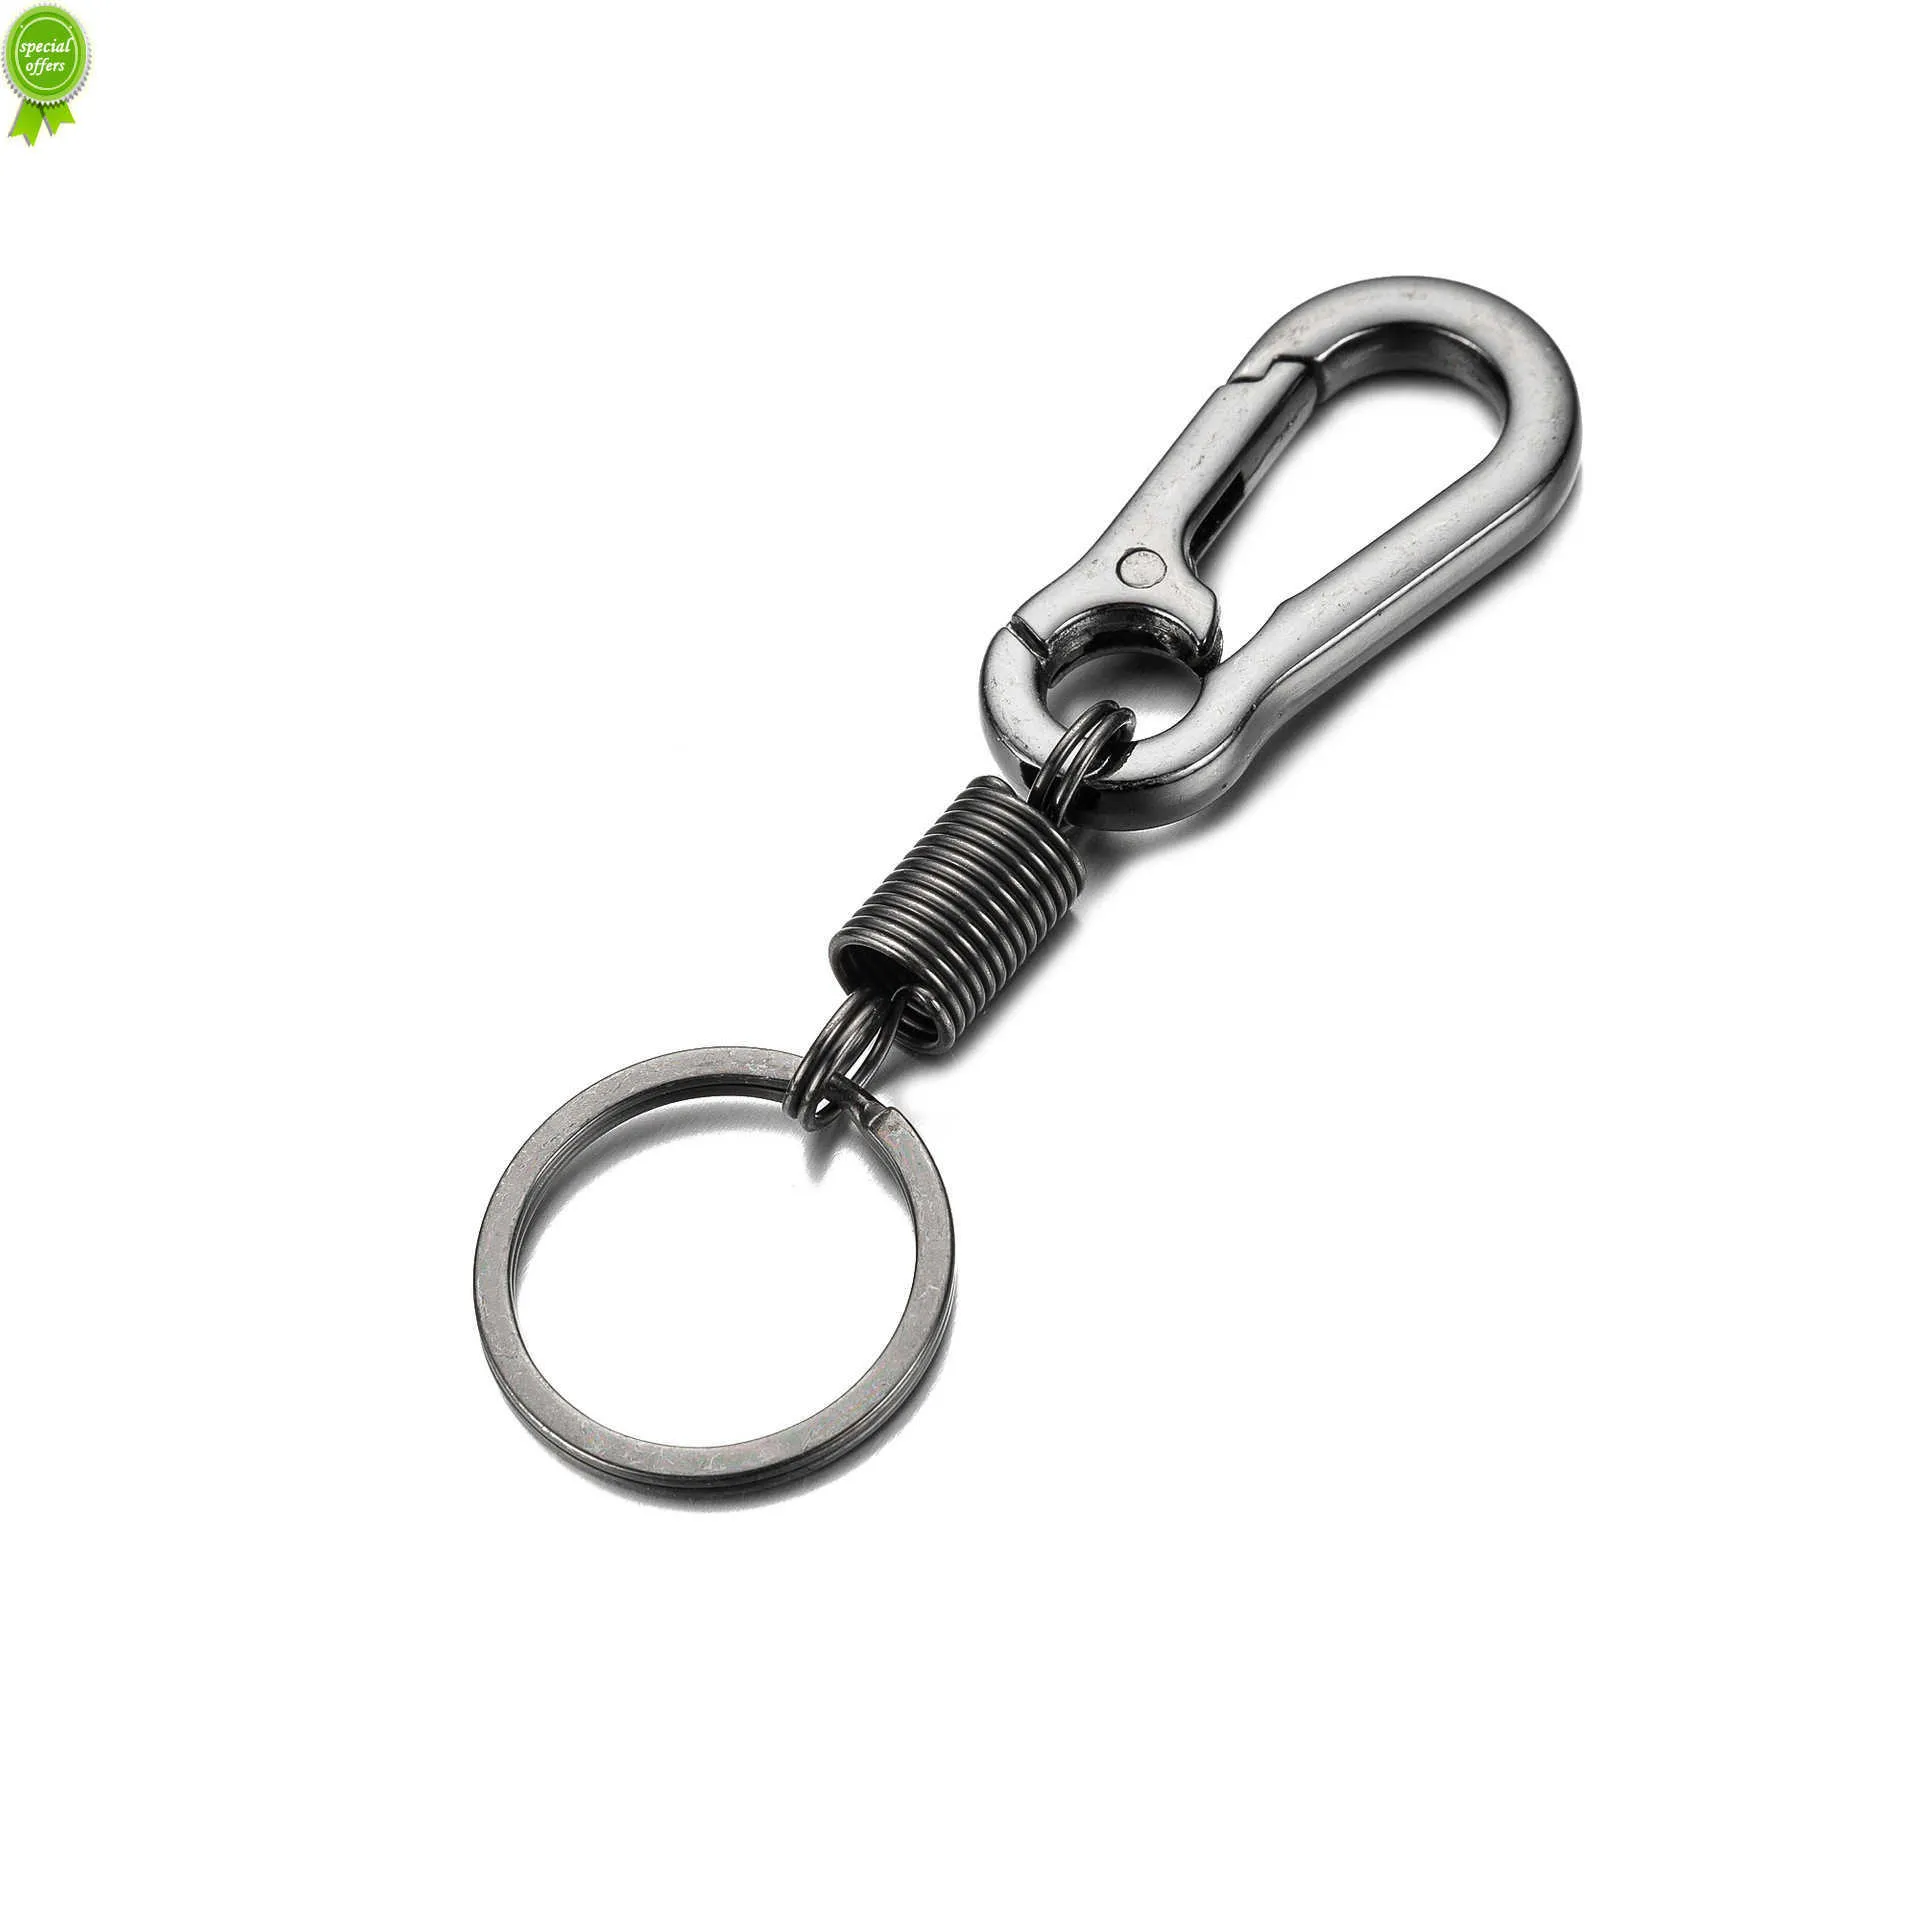 Frühlings-Schlüsselanhänger Kletterhaken Auto-Schlüsselanhänger Einfache starke Karabinerform Schlüsselanhänger Zubehör Metall Vintage Schlüsselanhänger